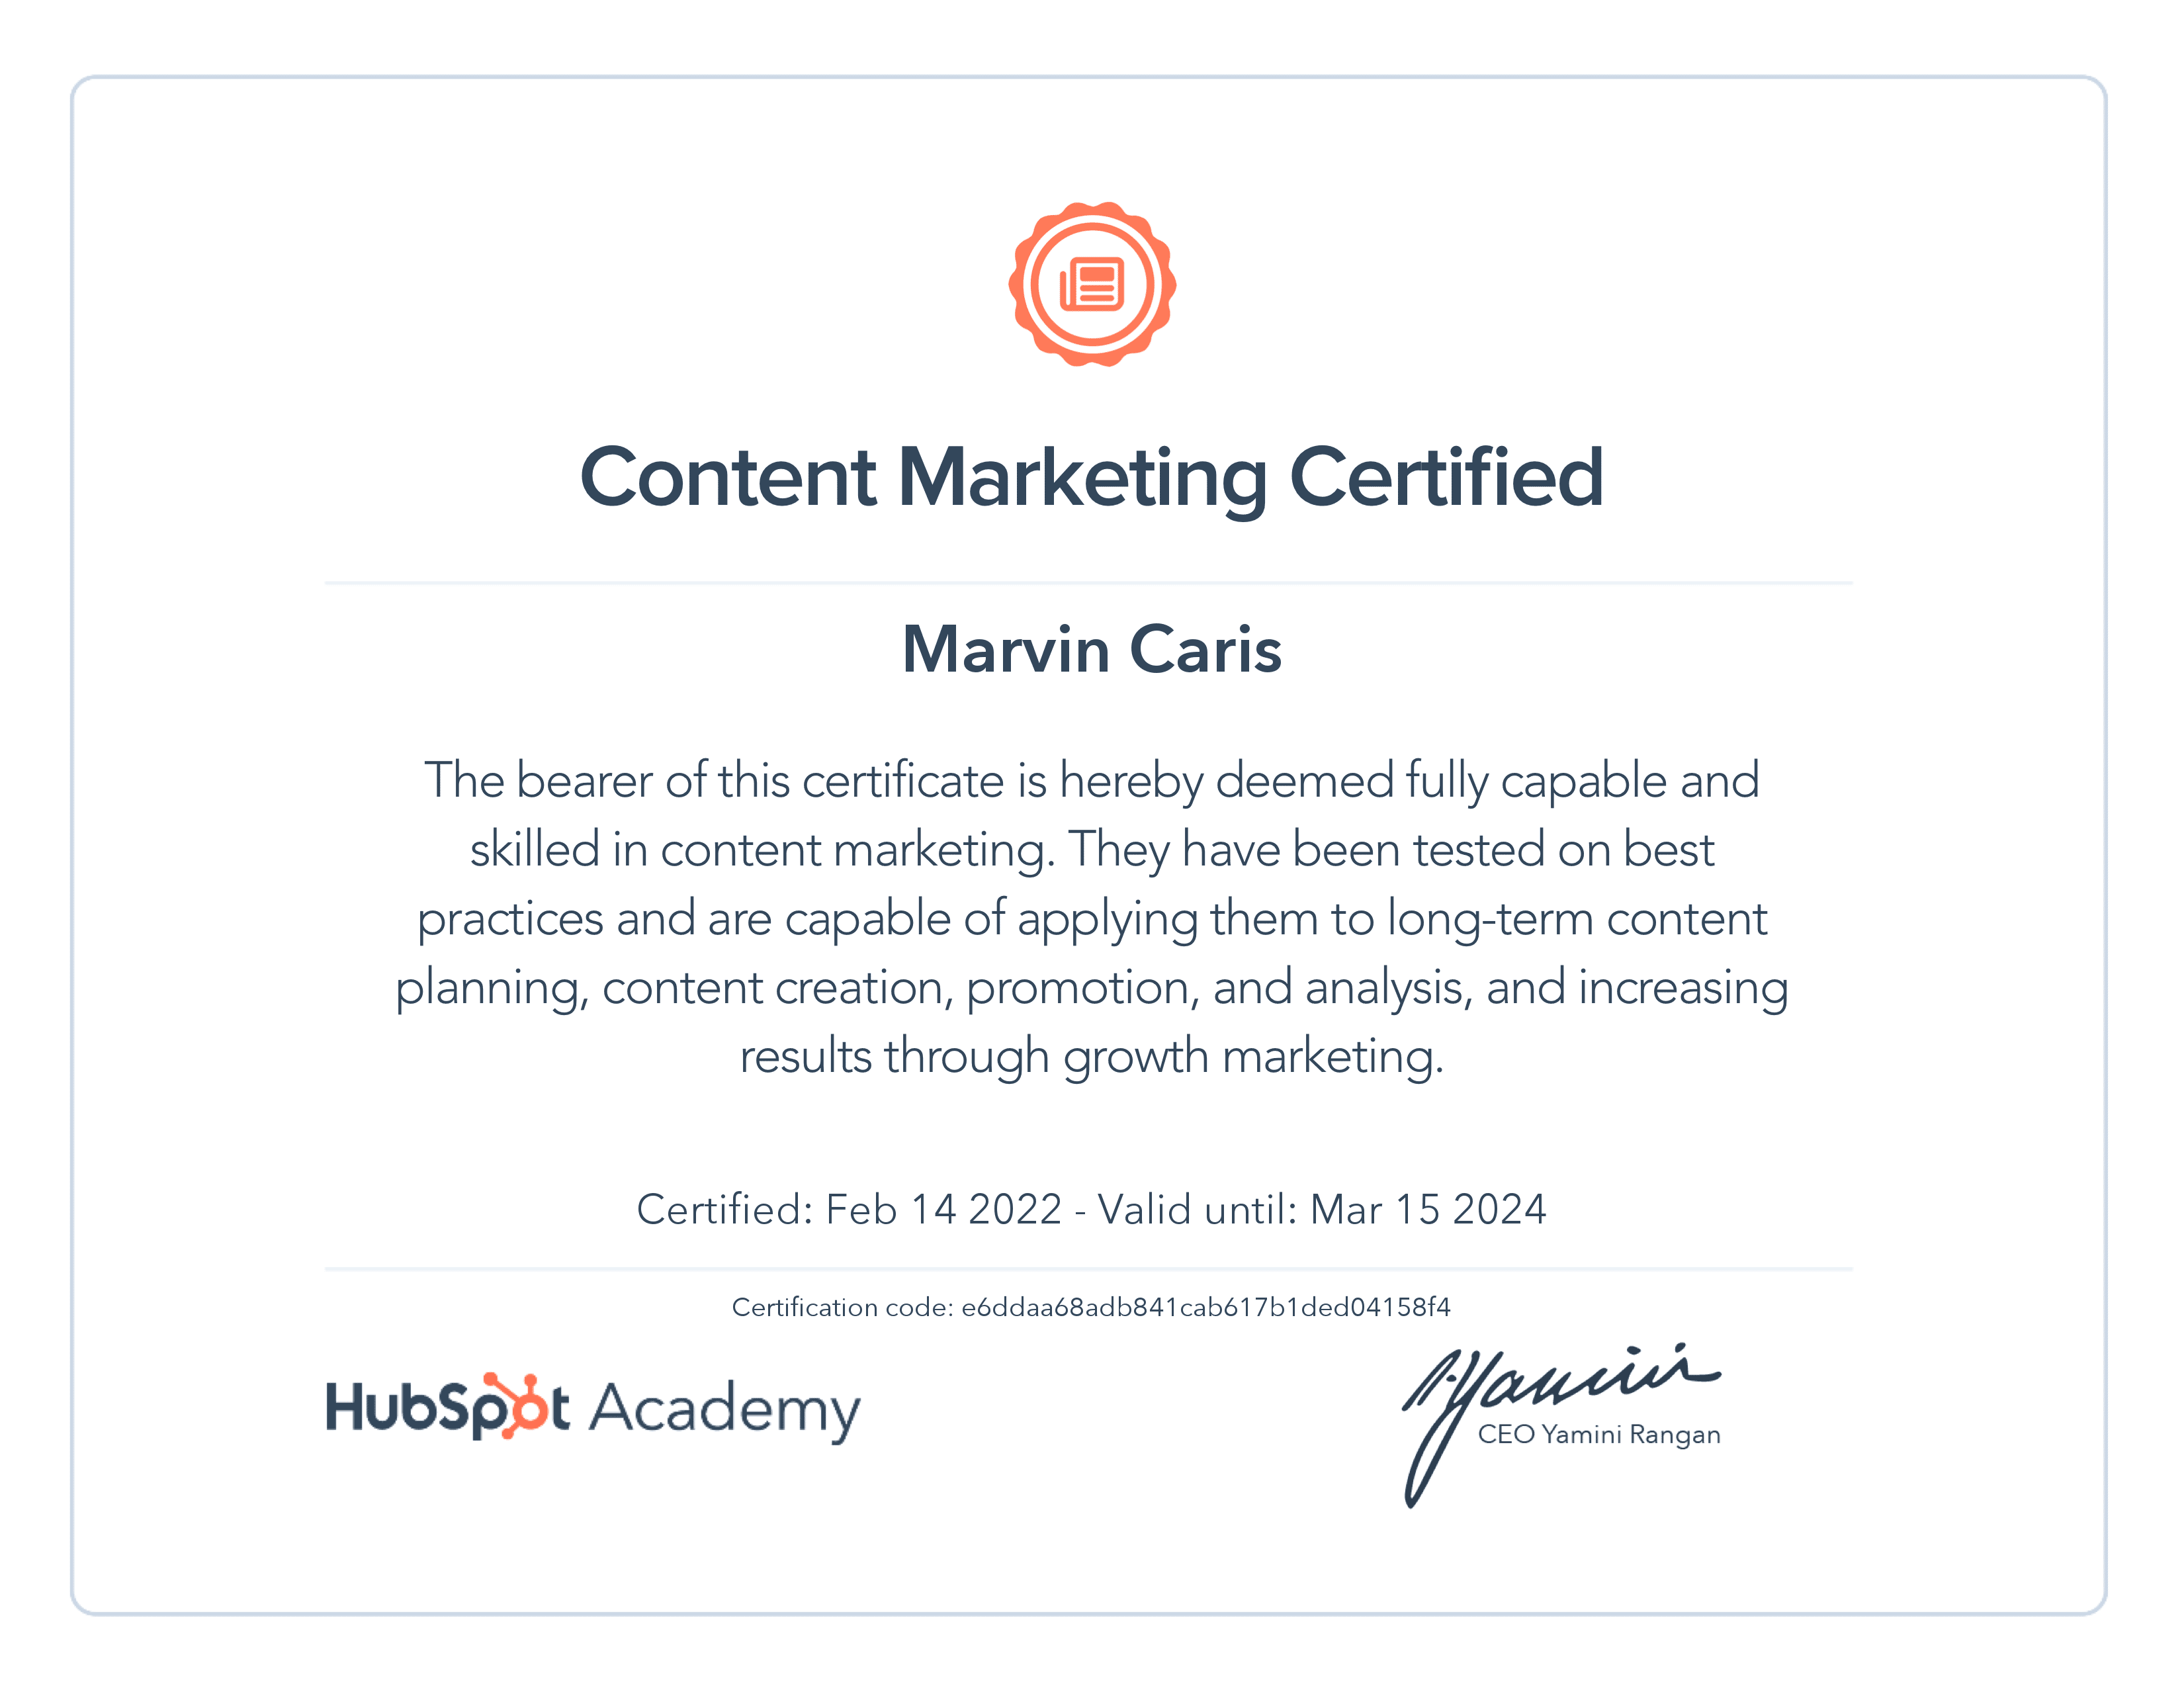 Zertifikat von der Hubspot Academy für Content Marketing